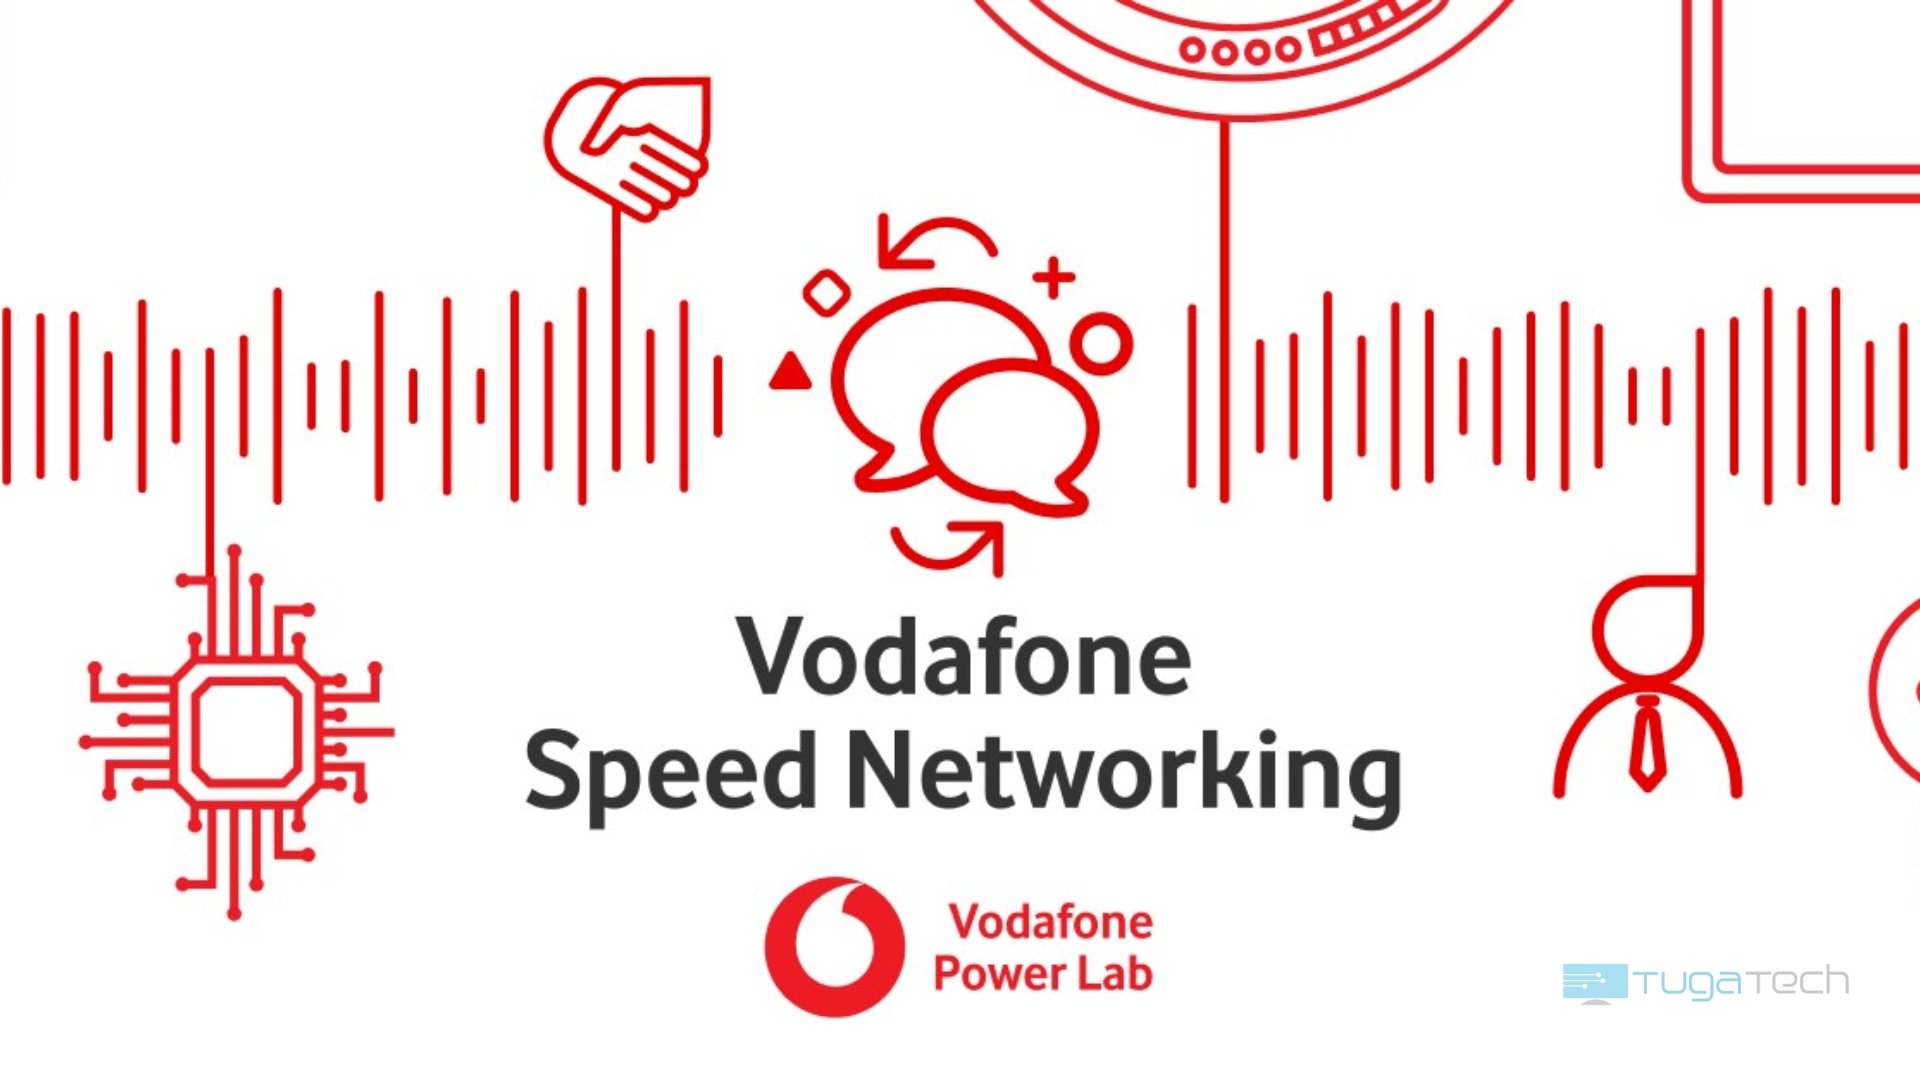 Vodafone lança evento de Speed Networking